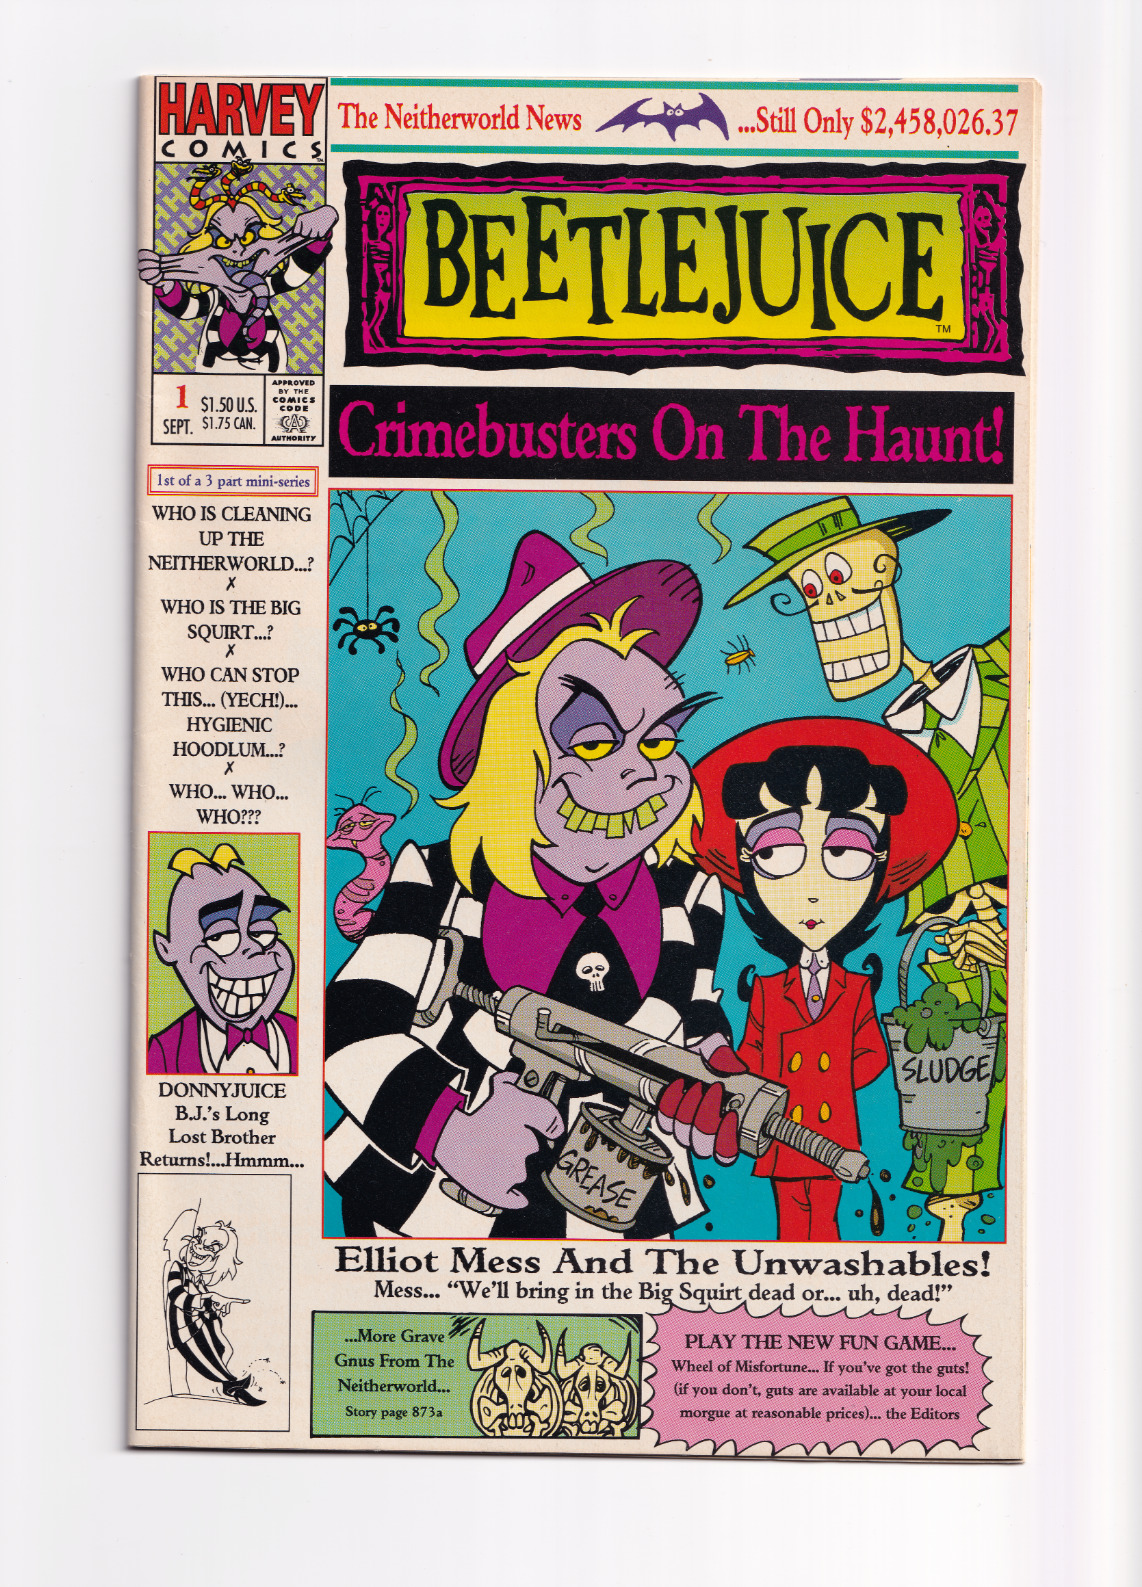 Vintage Beetlejuice: Crimebusters on the Haunt #1 Comic (1992) Harvey Comics